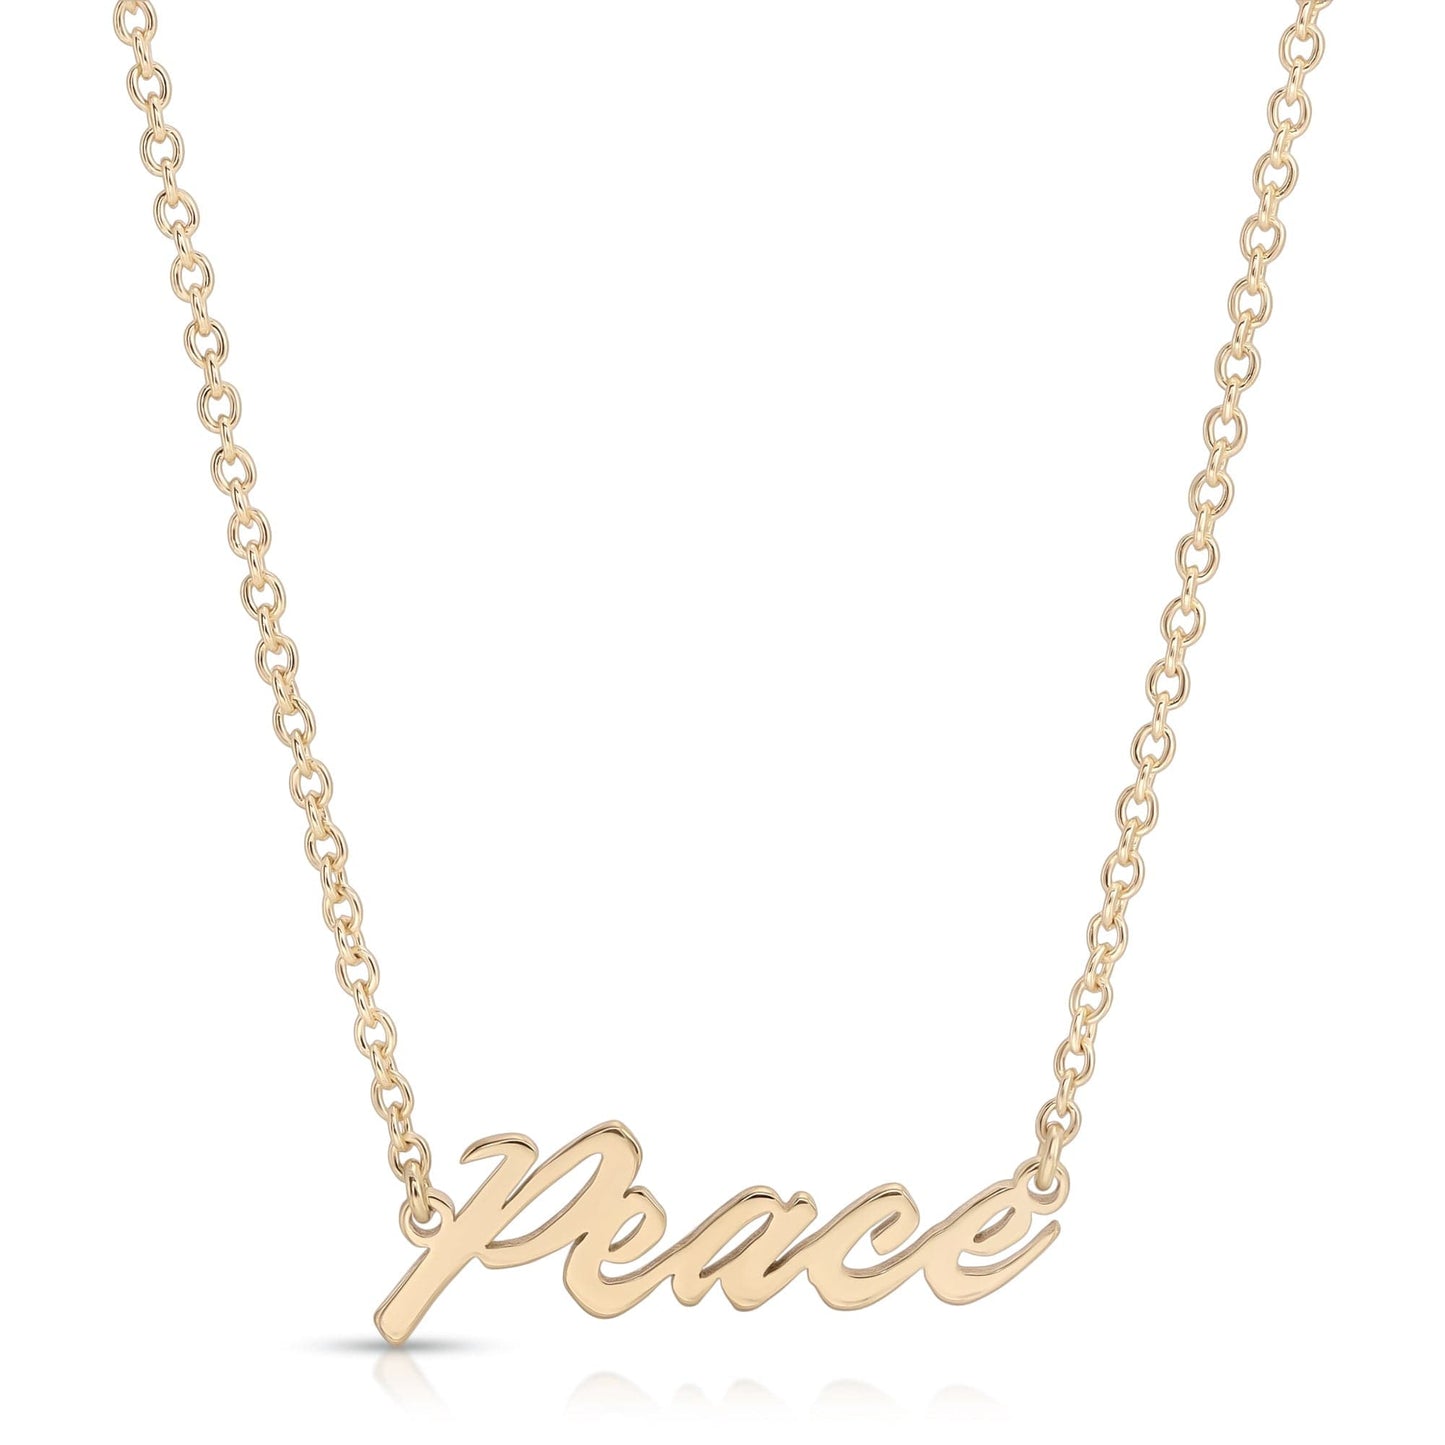 'Peace' Script Necklace